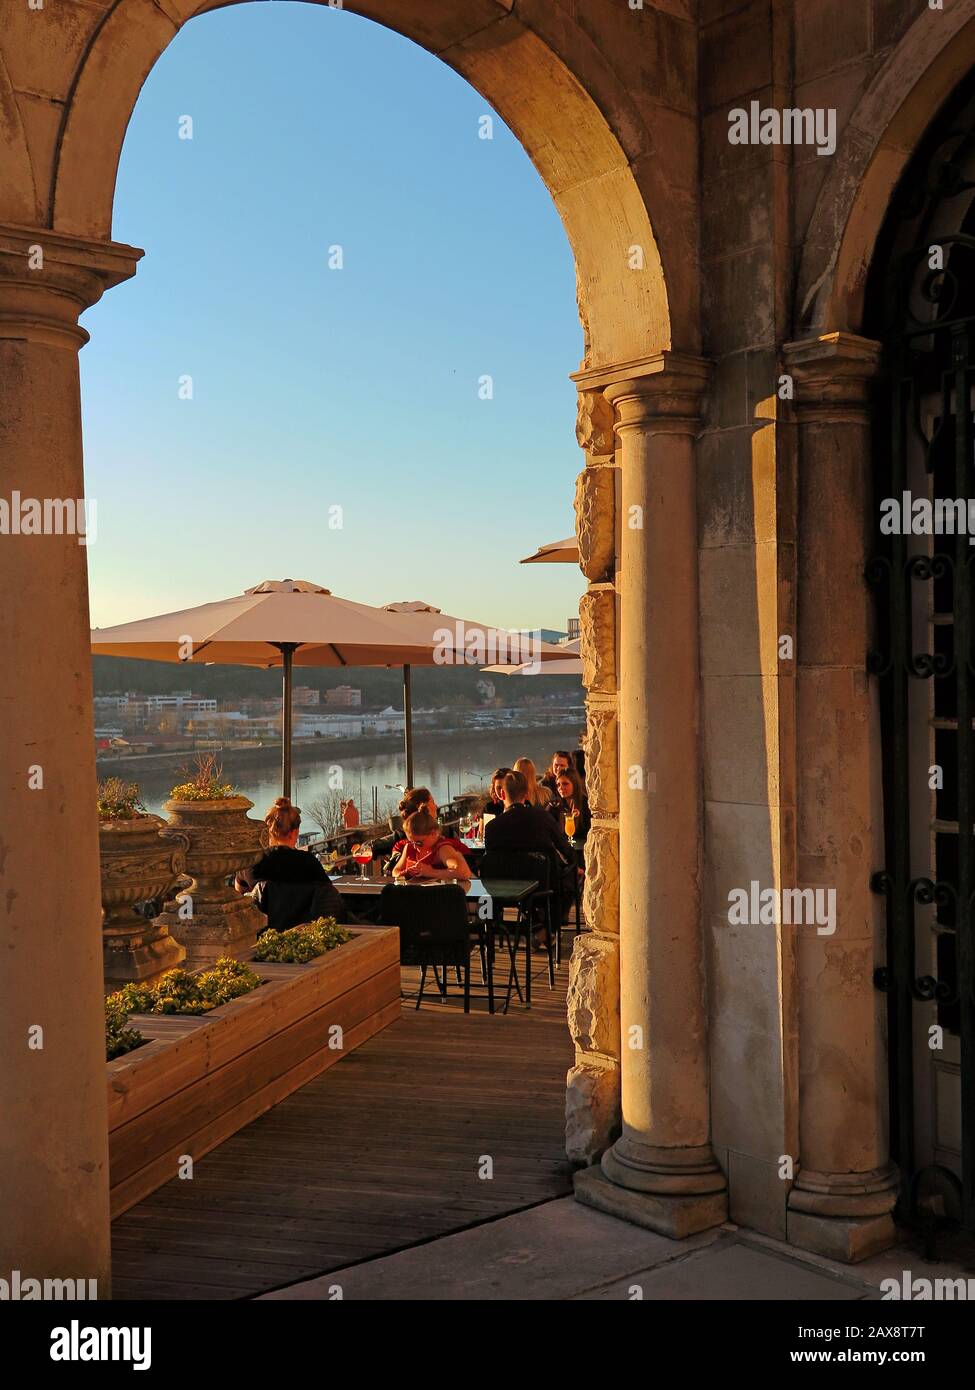 Grâce à l'arche, vous pouvez voir des gens apprécier le restaurant. La rivière et la rive opposée en arrière-plan. Banque D'Images